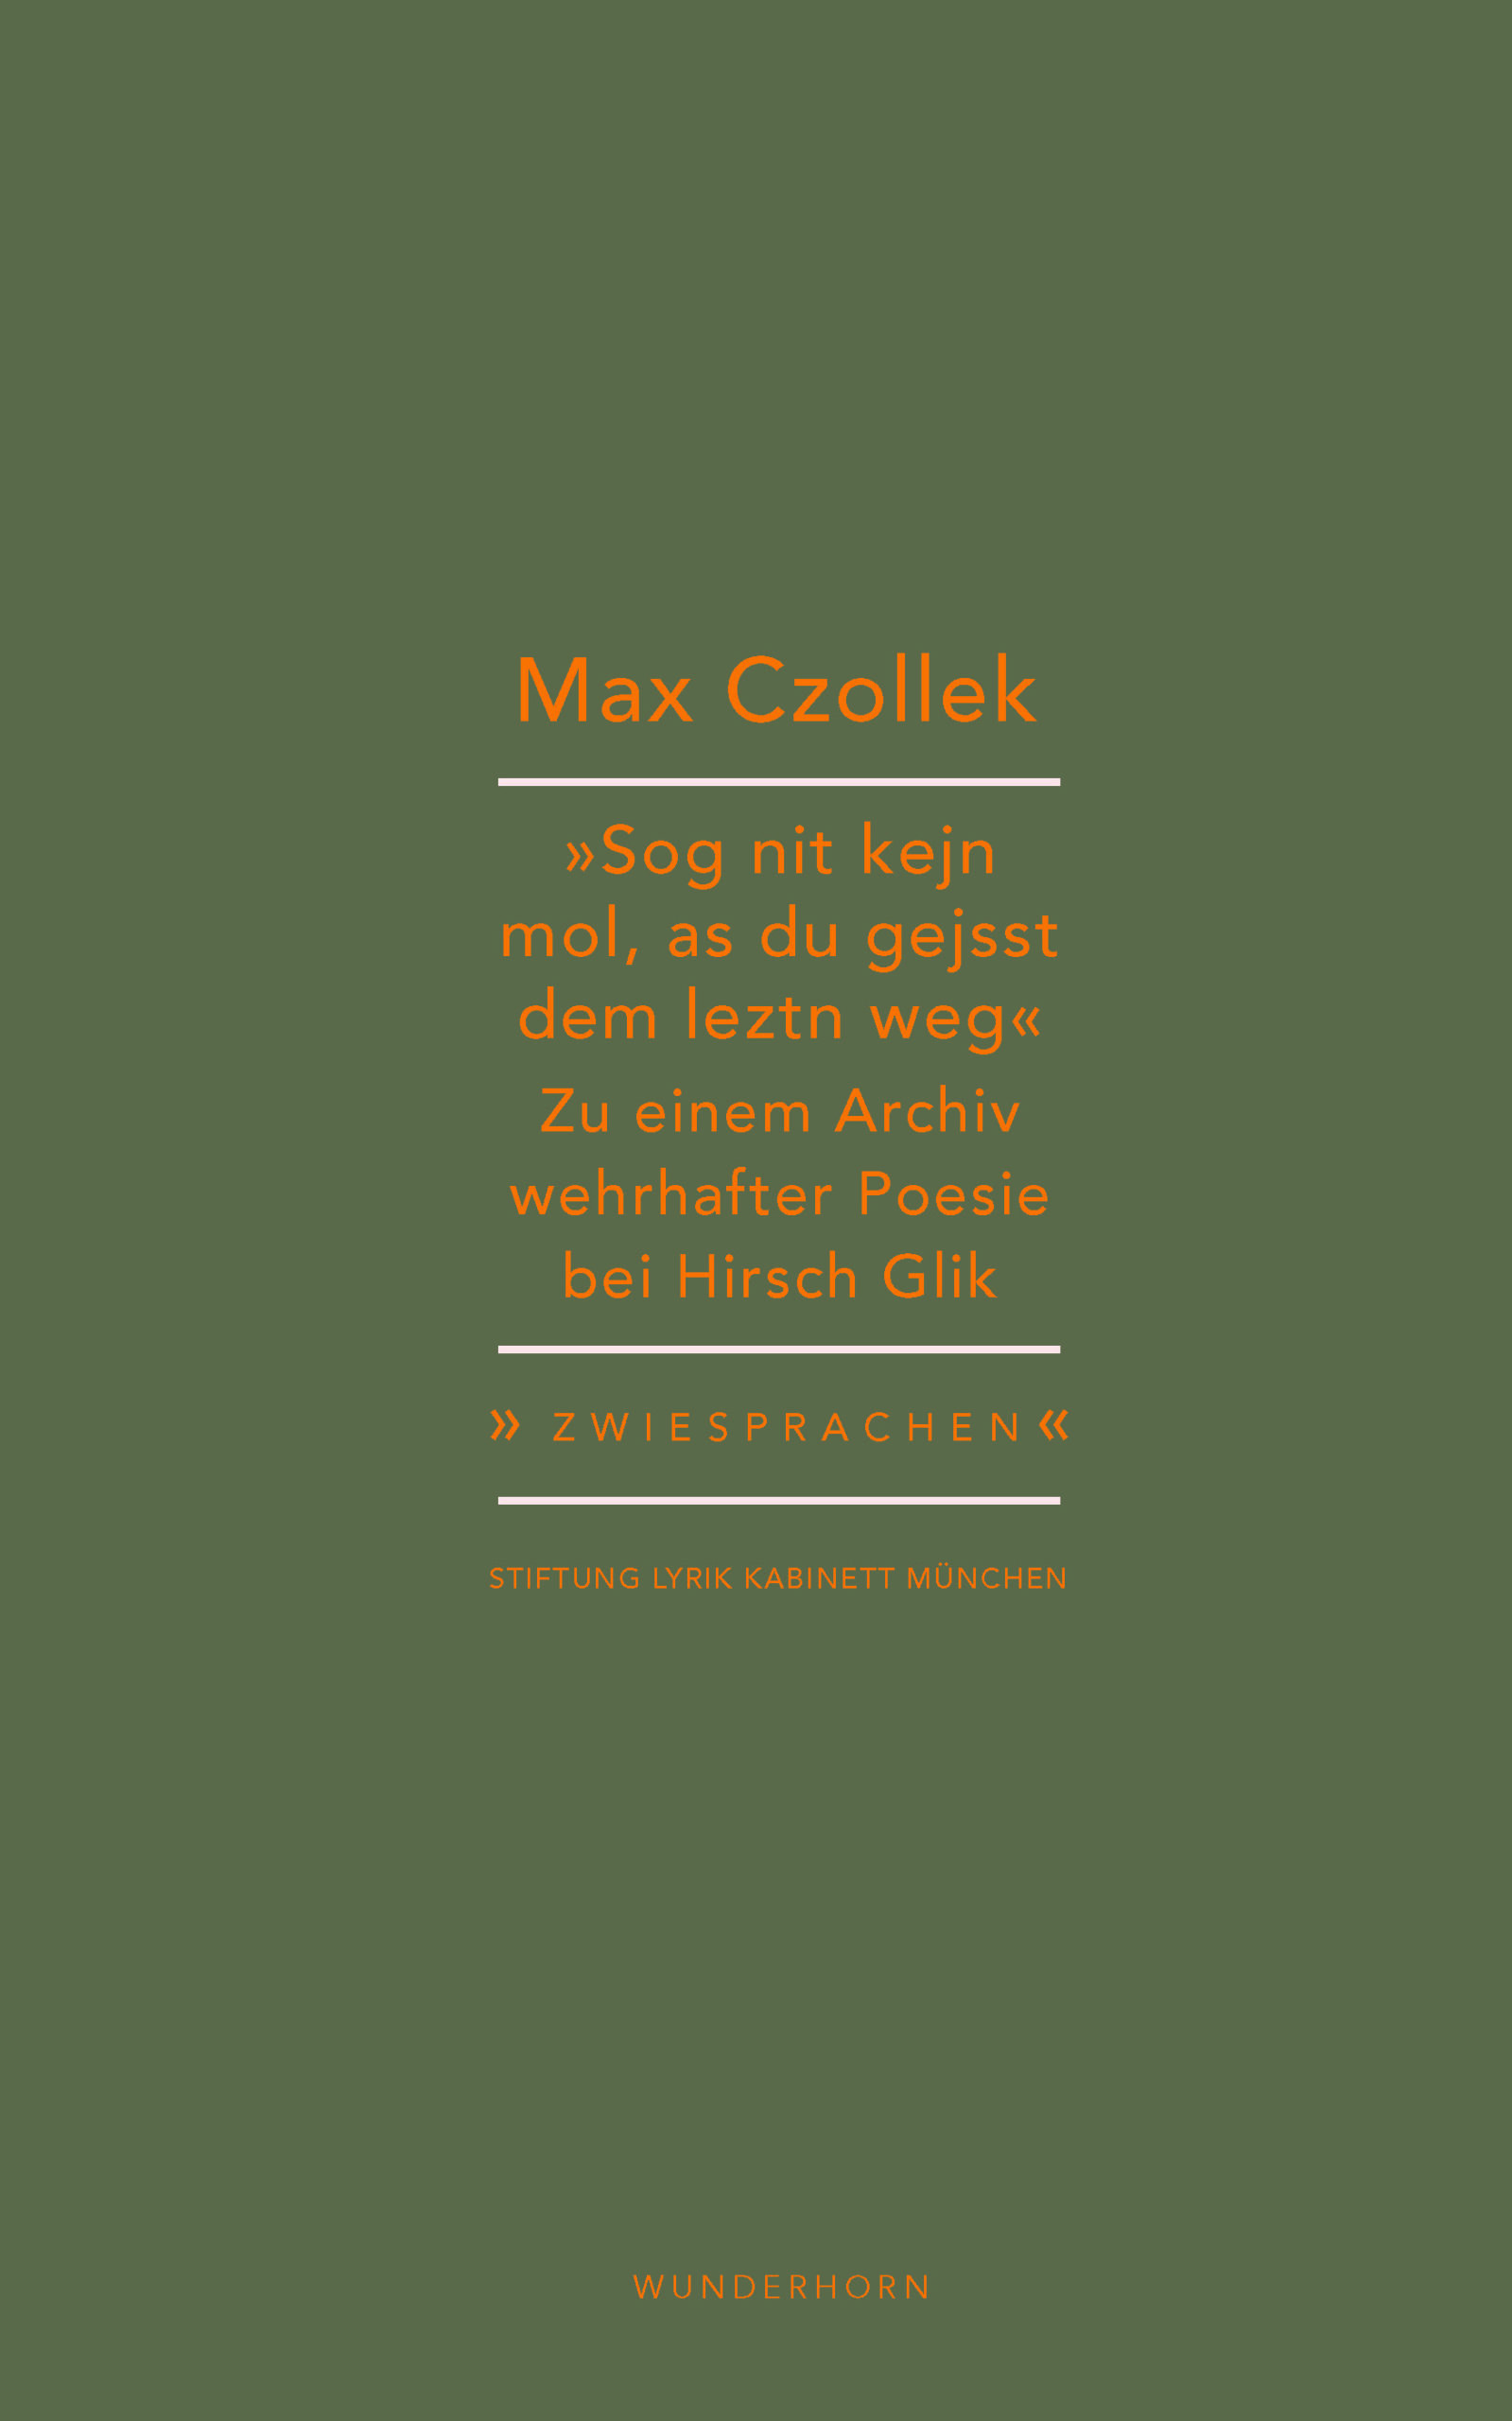 Max Czollek über Hirsch Glik